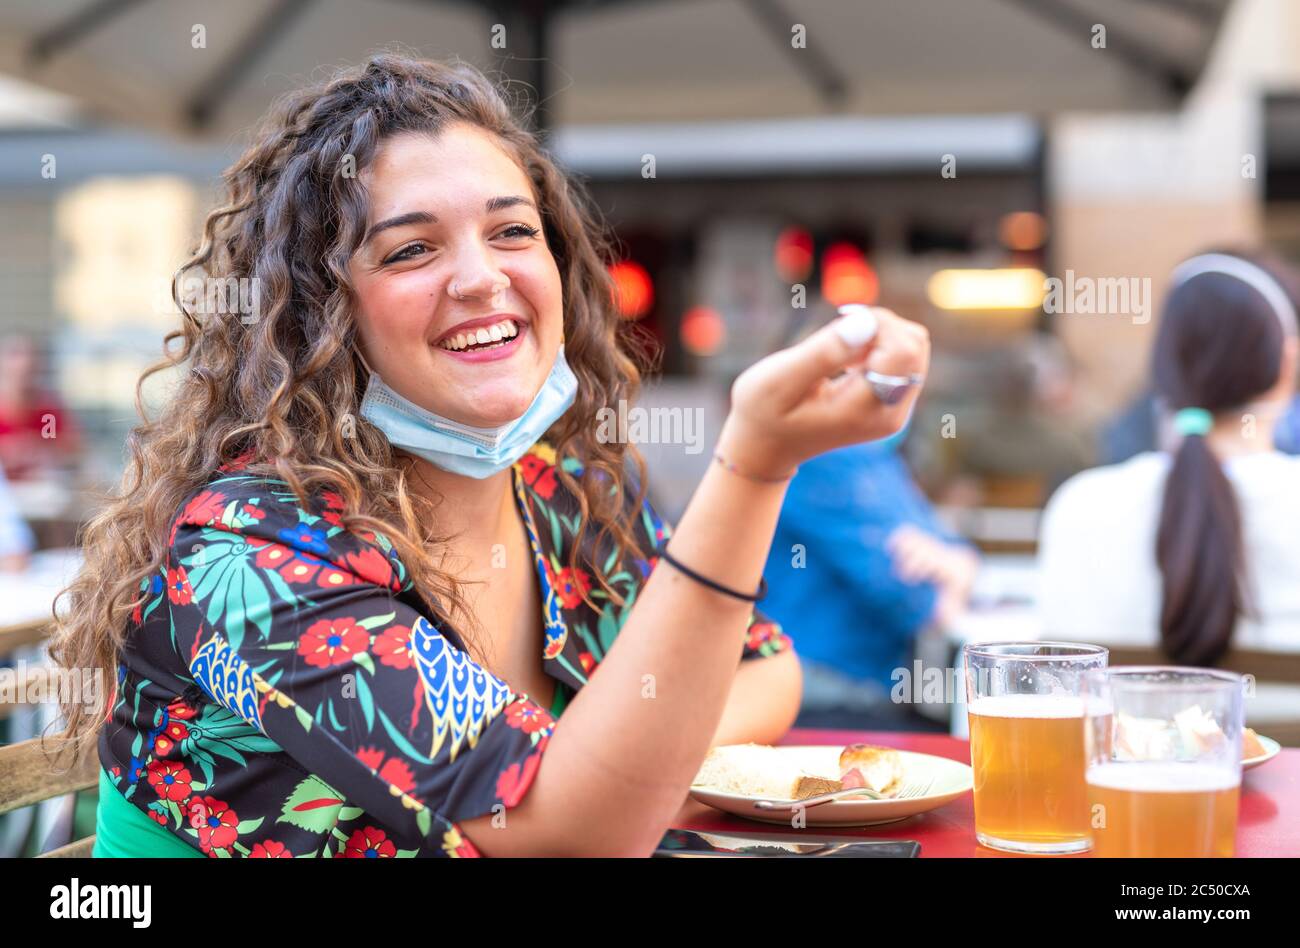 Junge Mädchen mit lockigen Haaren, die lacht, während sie Bier in einer Bar trinken, trägt eine Schutzmaske unter ihrem Kinn, Konzept der Wiederaufnahme der sozialen aktiv Stockfoto